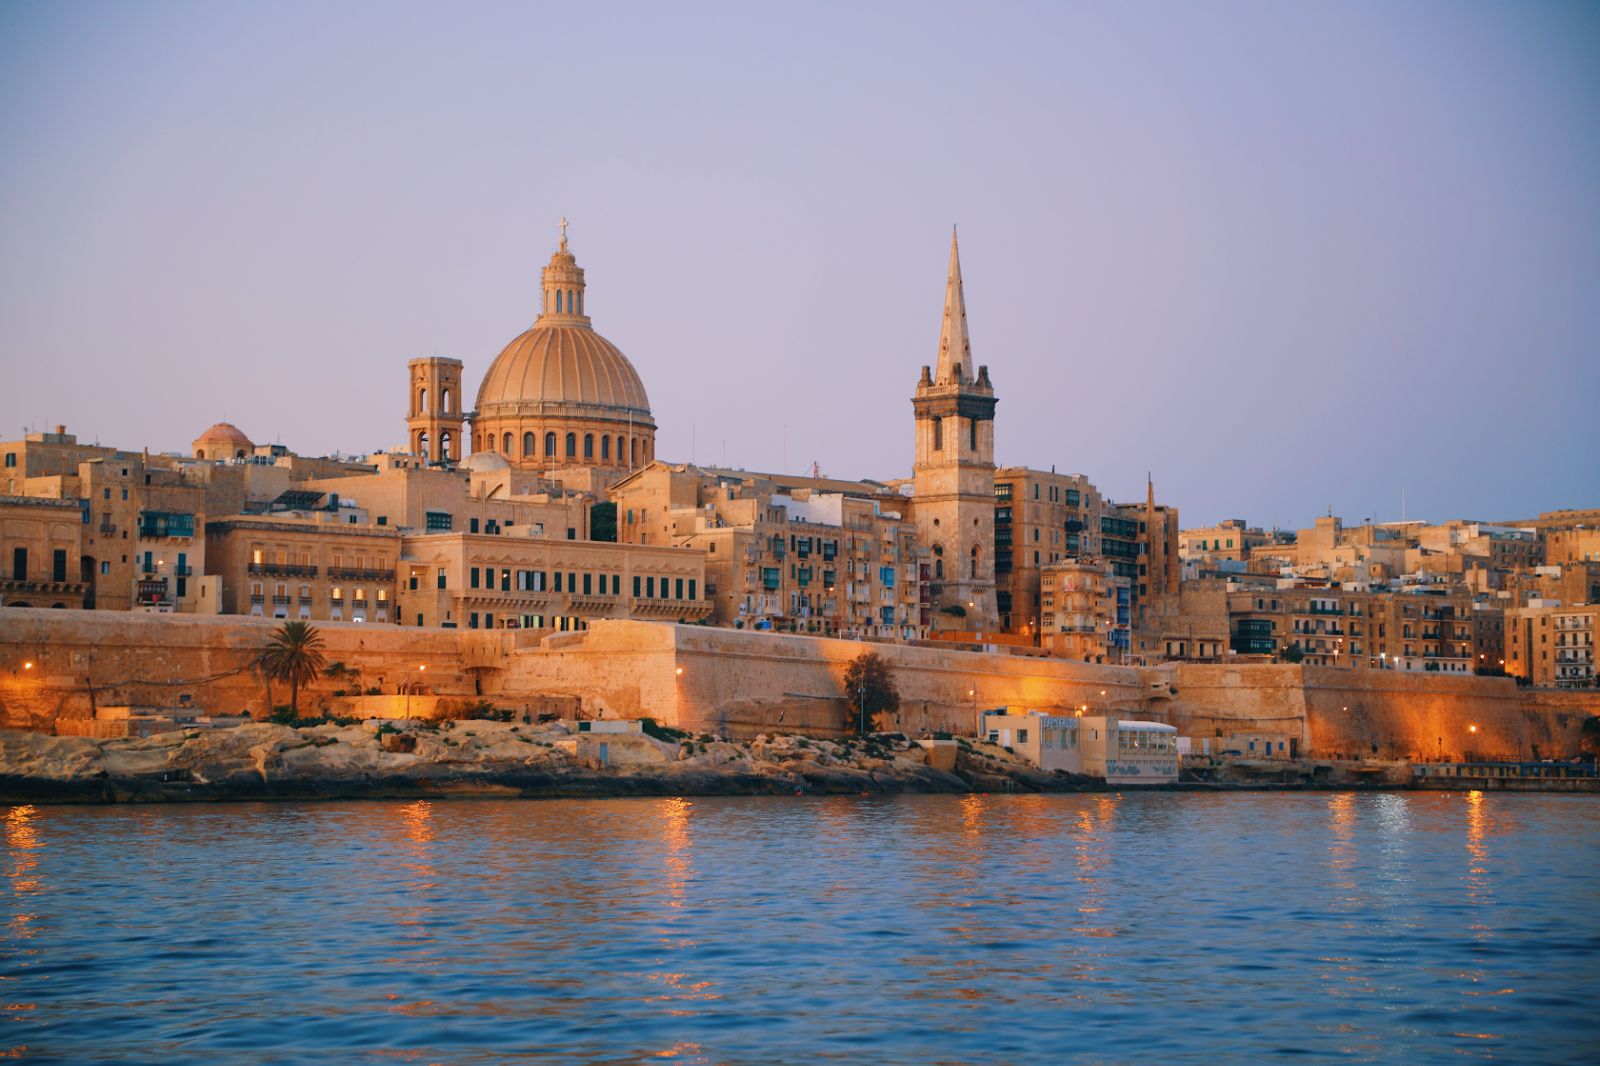 A waterfront near Valletta in Malta illuminated at dusk